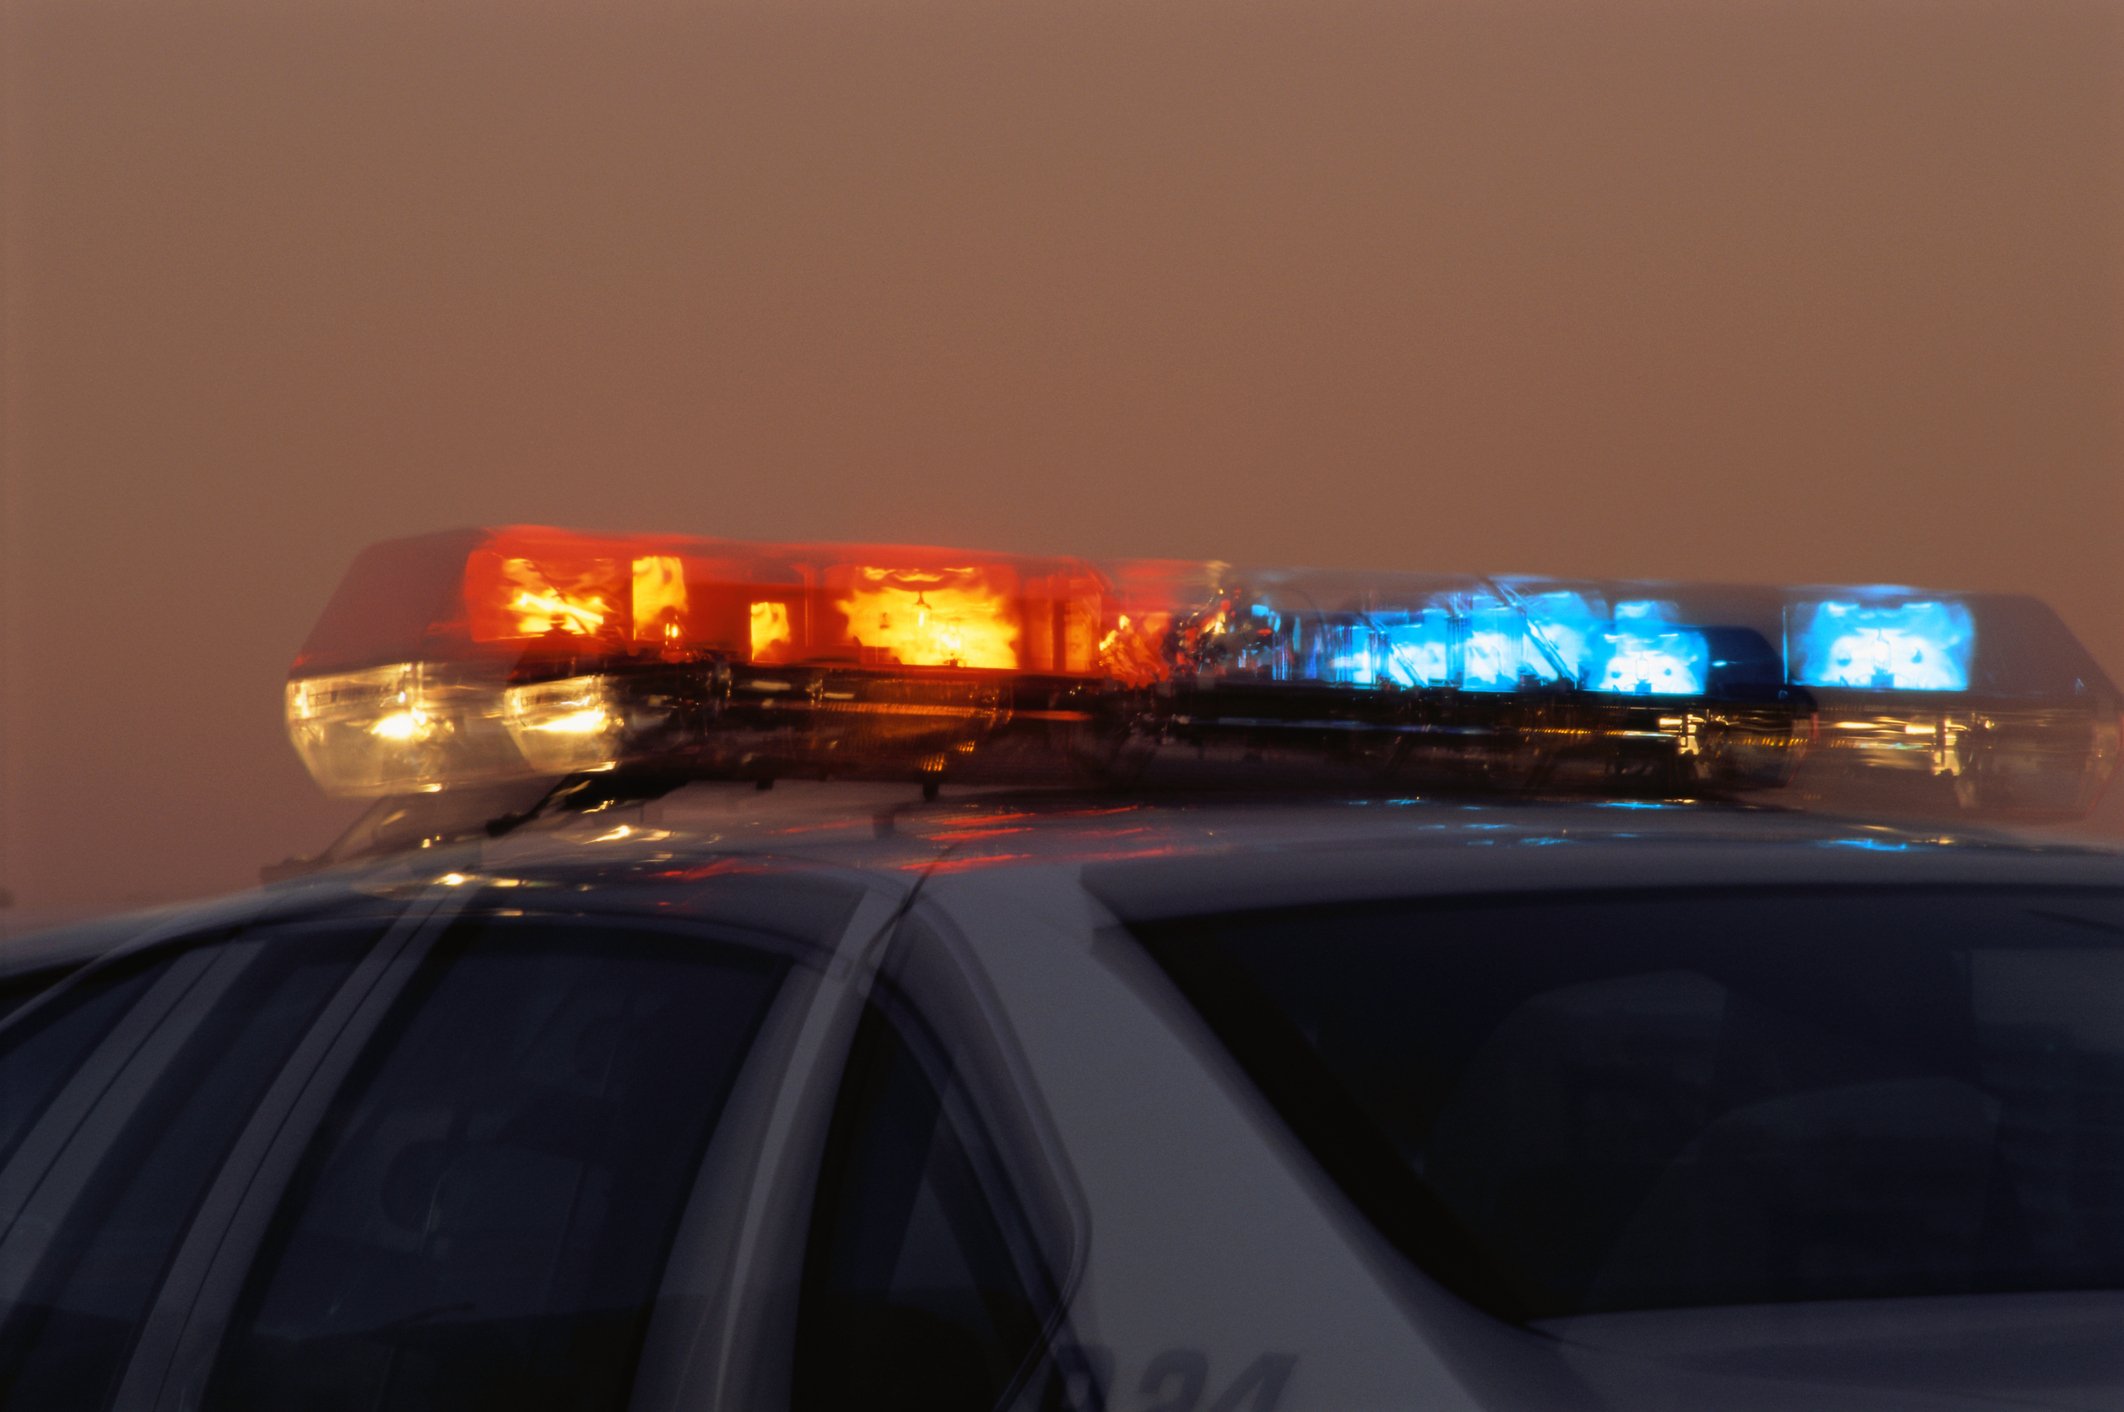 Lichtleiste am Polizeiauto I Quelle: Getty Images